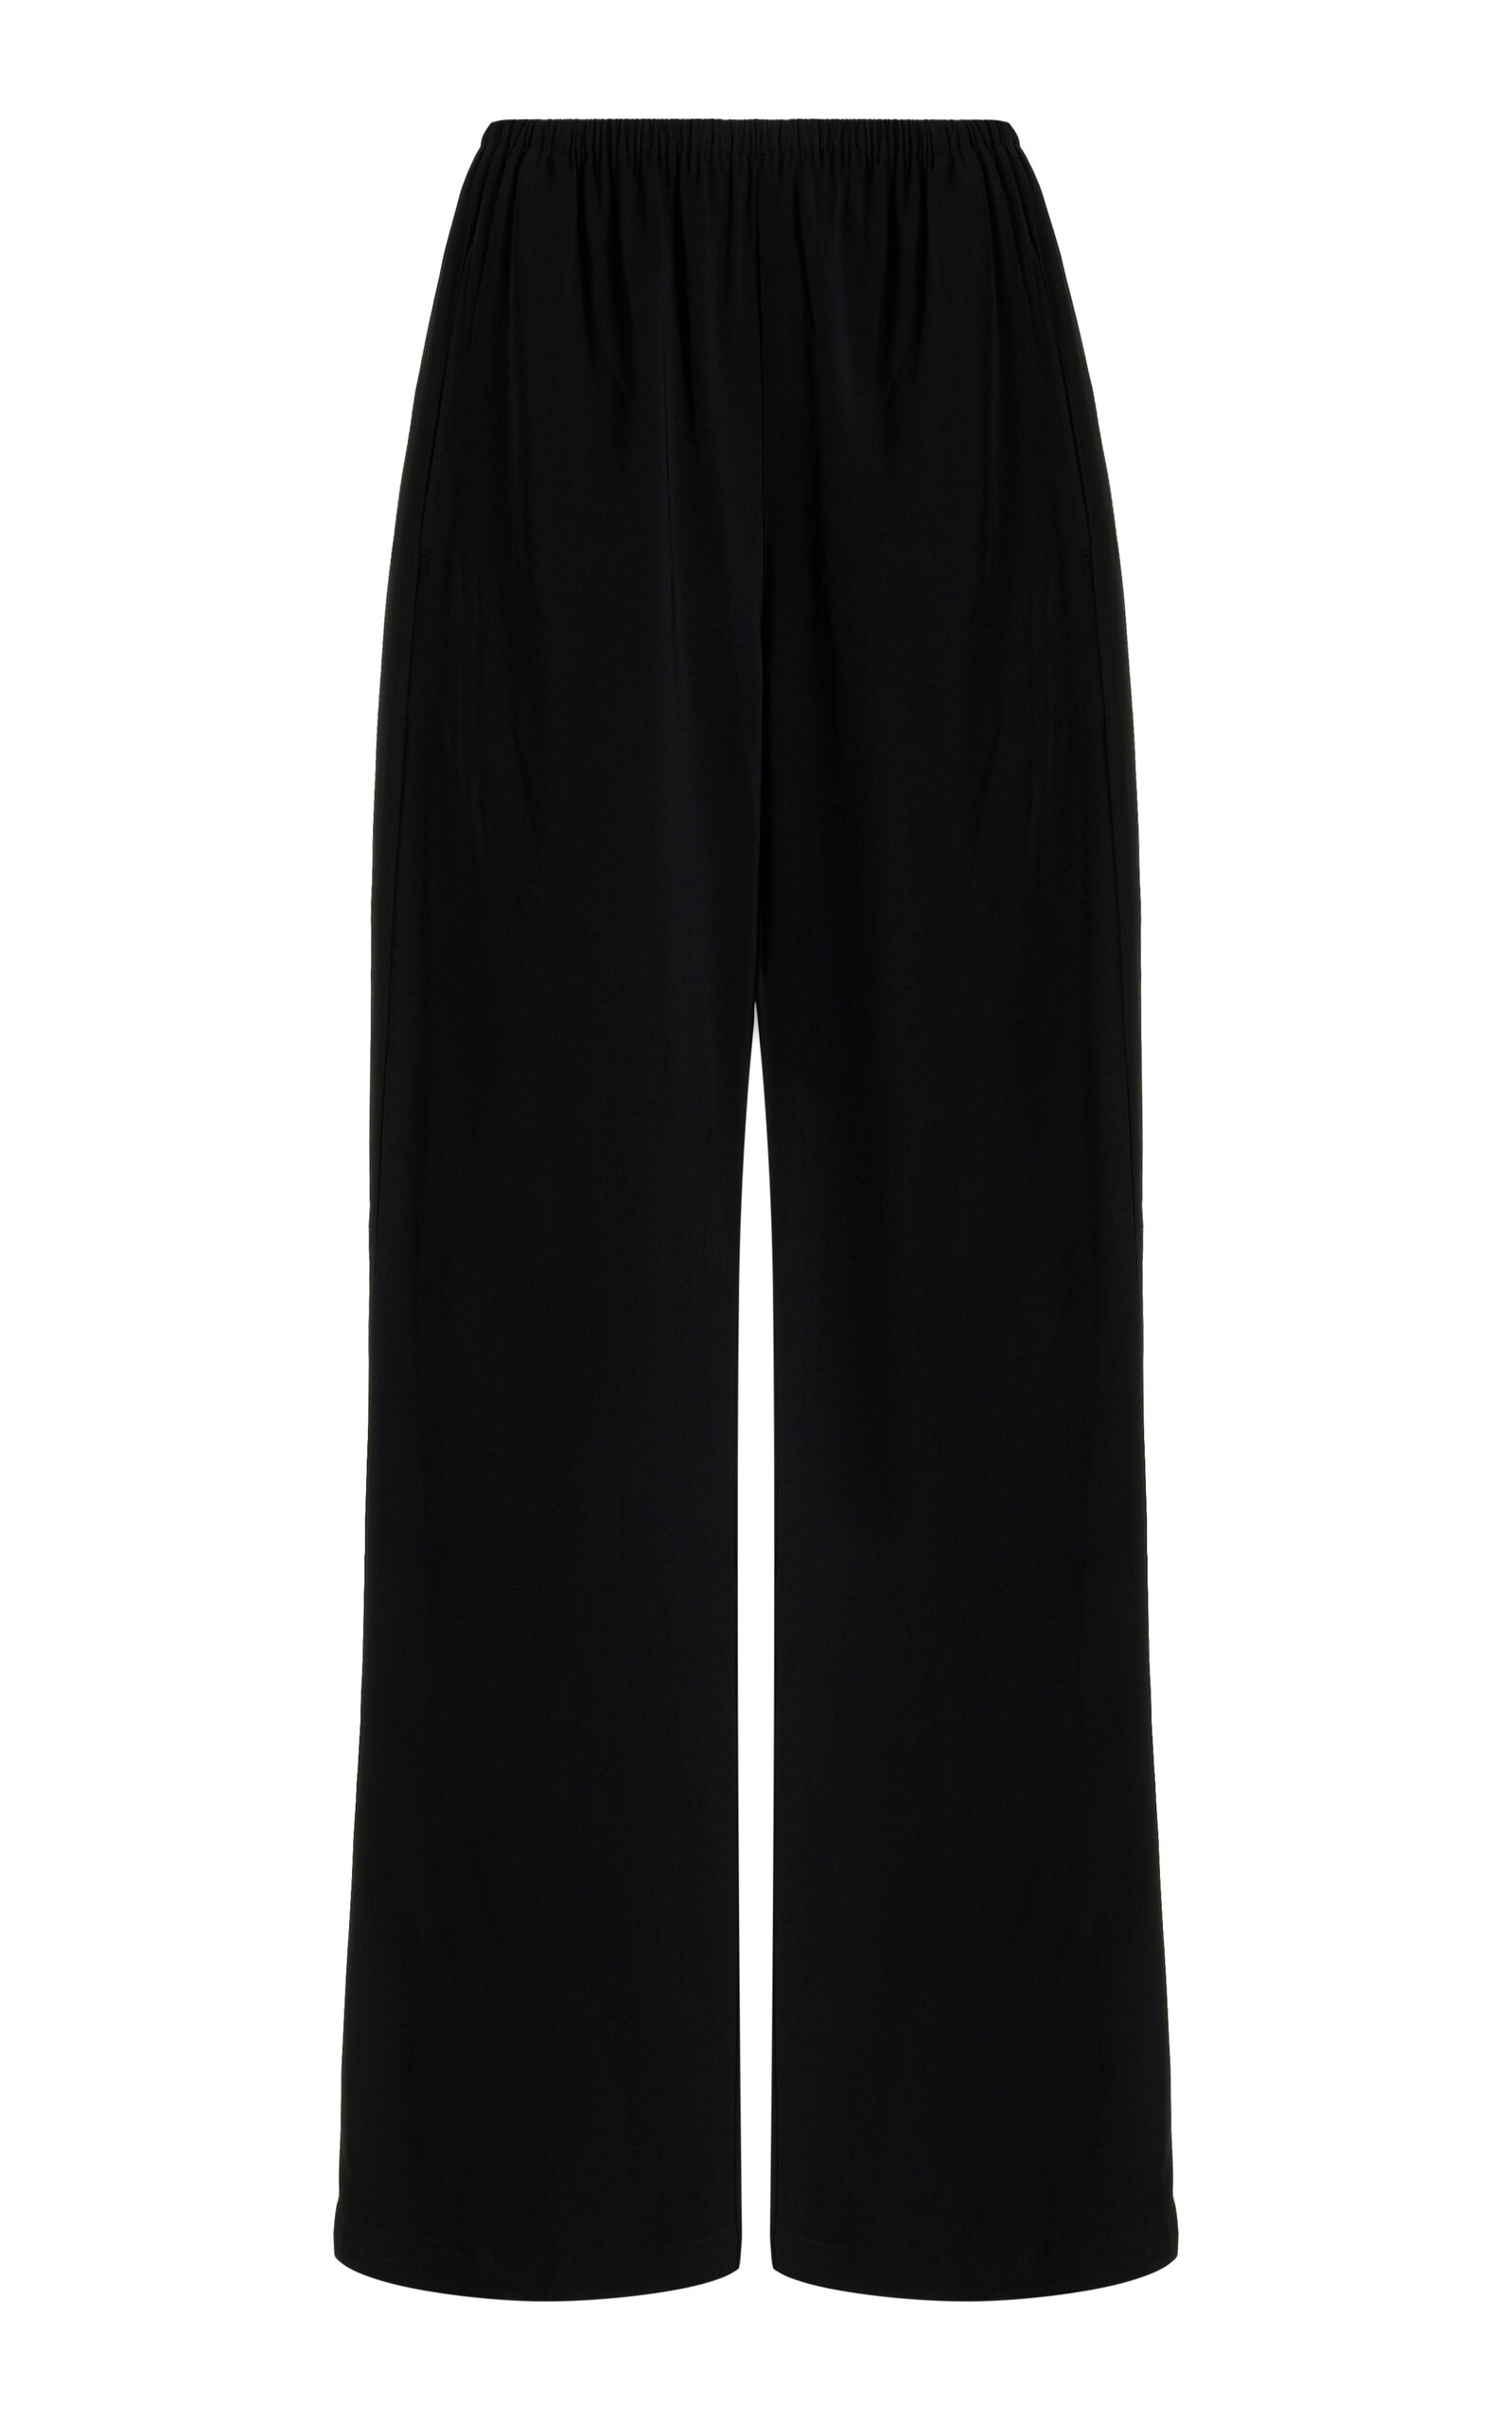 Shop Solid & Striped X Sofia Richie Grainge Exclusive The Monaco Pants In Black